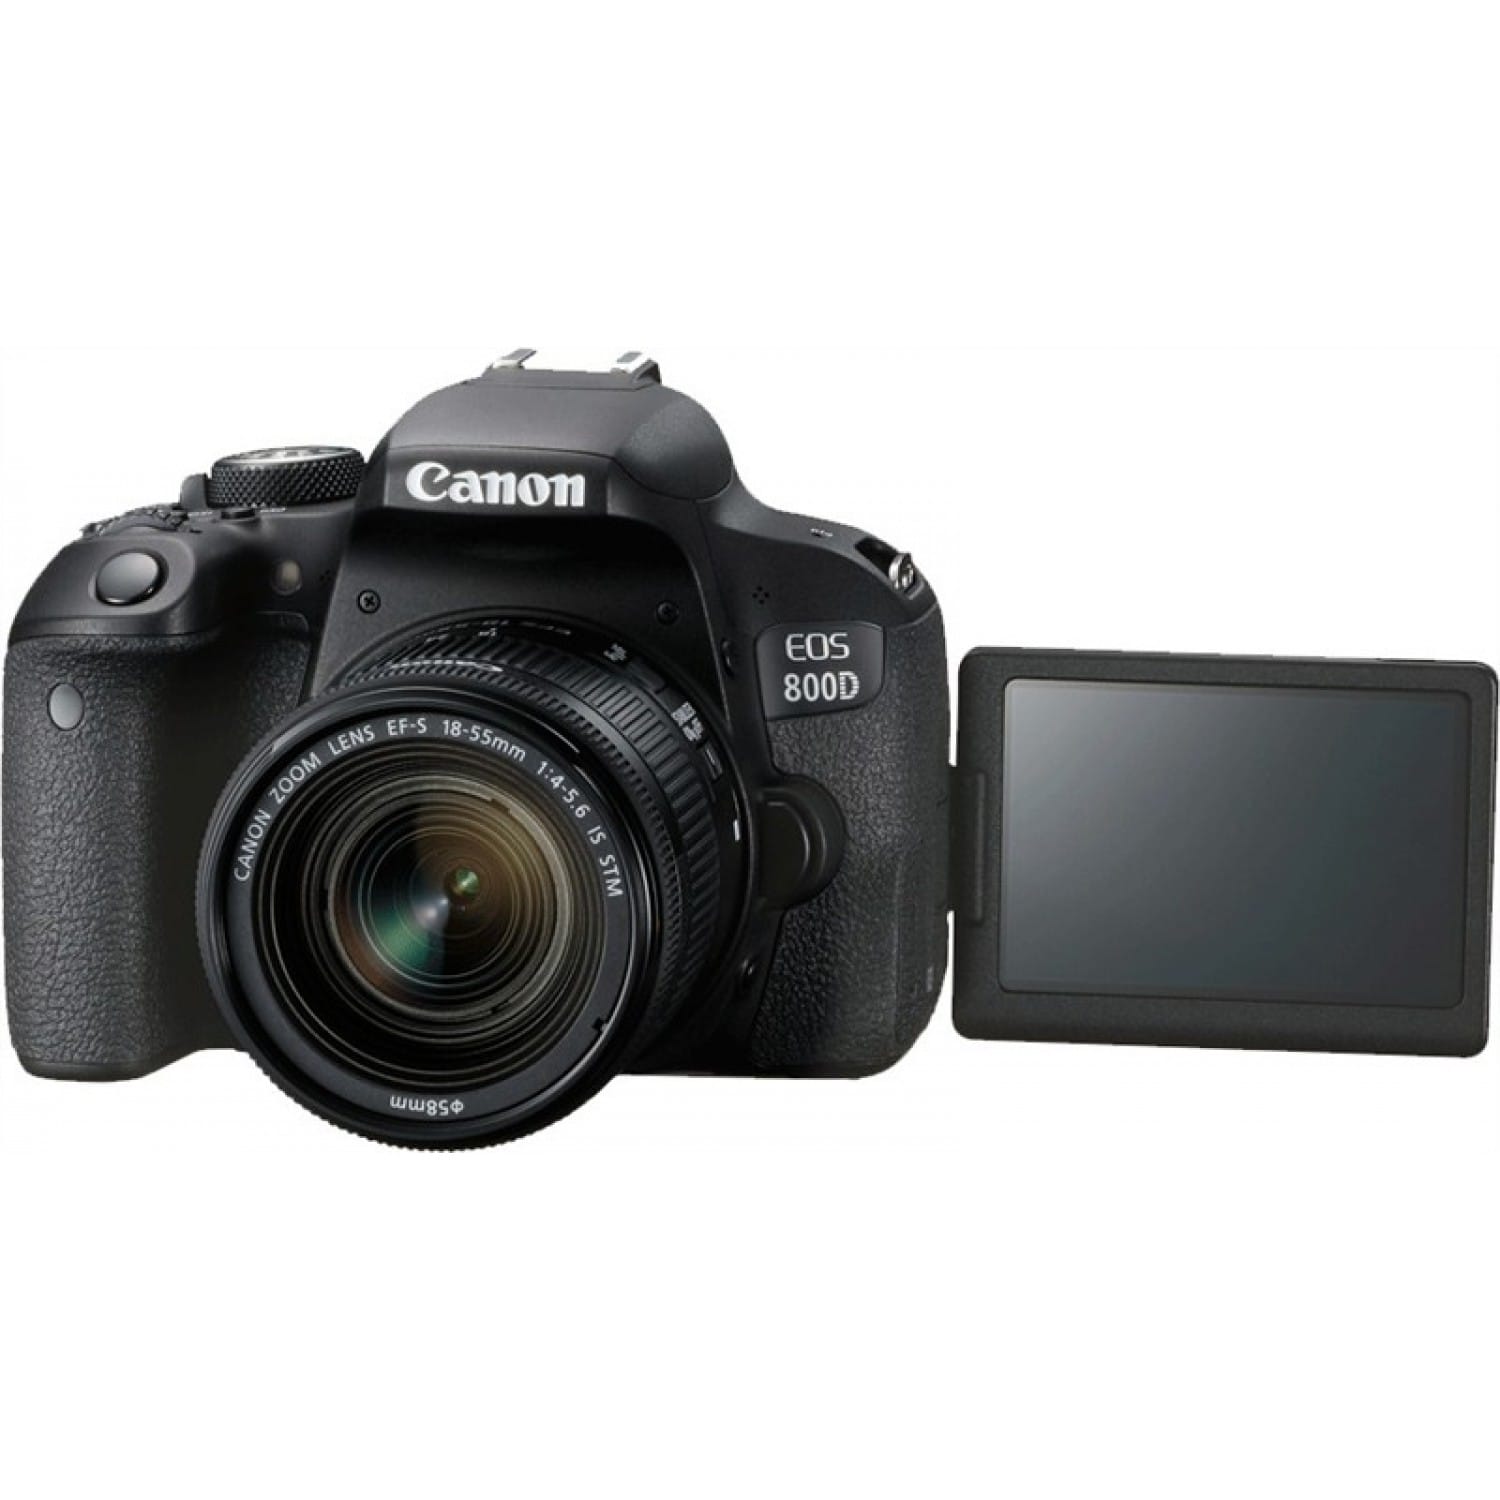 Appareil reflex numérique CANON EOS 800D boitier + optique 18-55 IS STM -  24,2Mpx - rafale 6 img./s - écran tactile 7,7cm orientable - vidéo Full HD